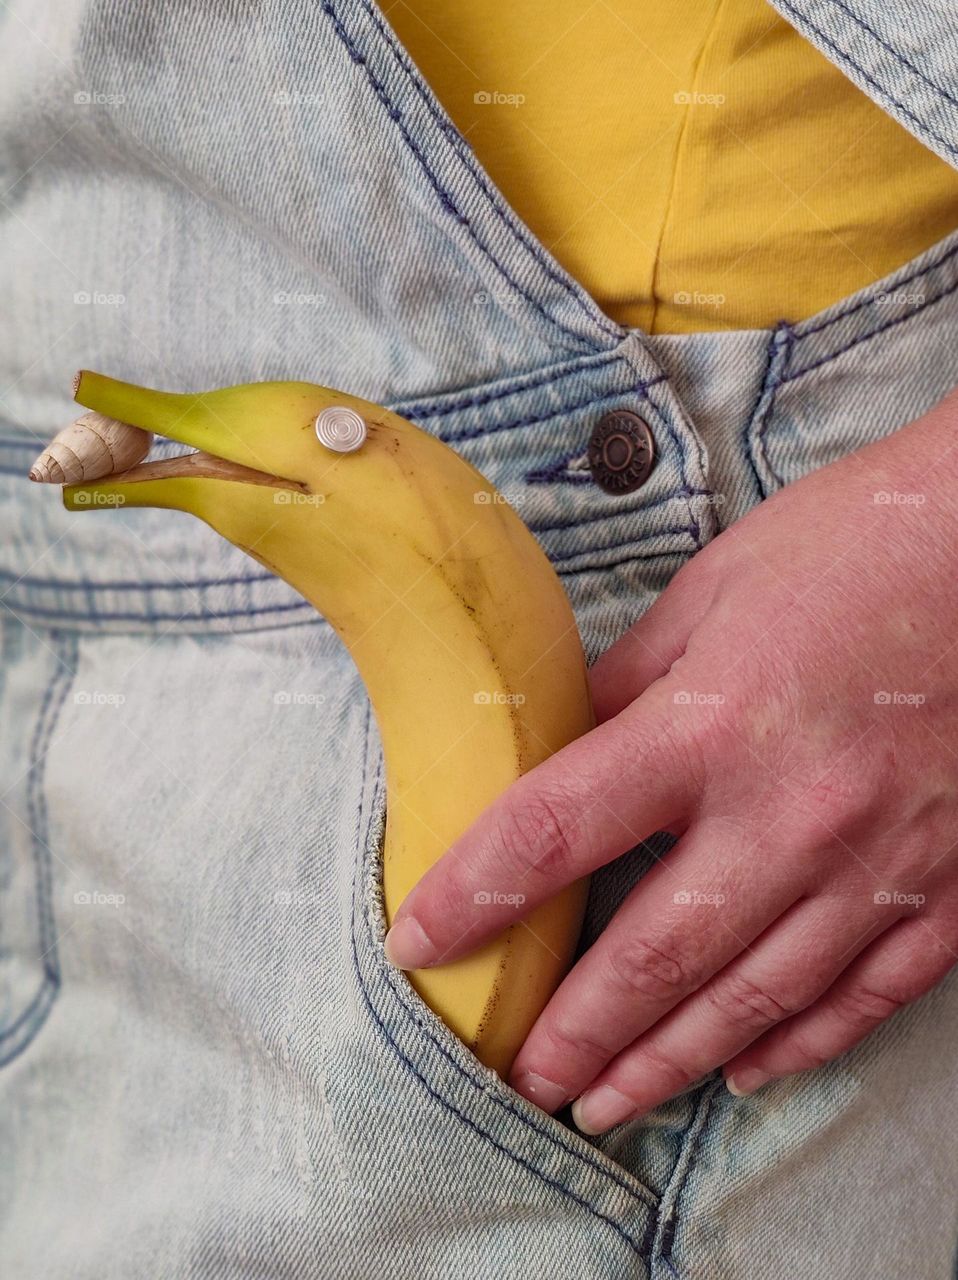 Smiley banana in my pocket